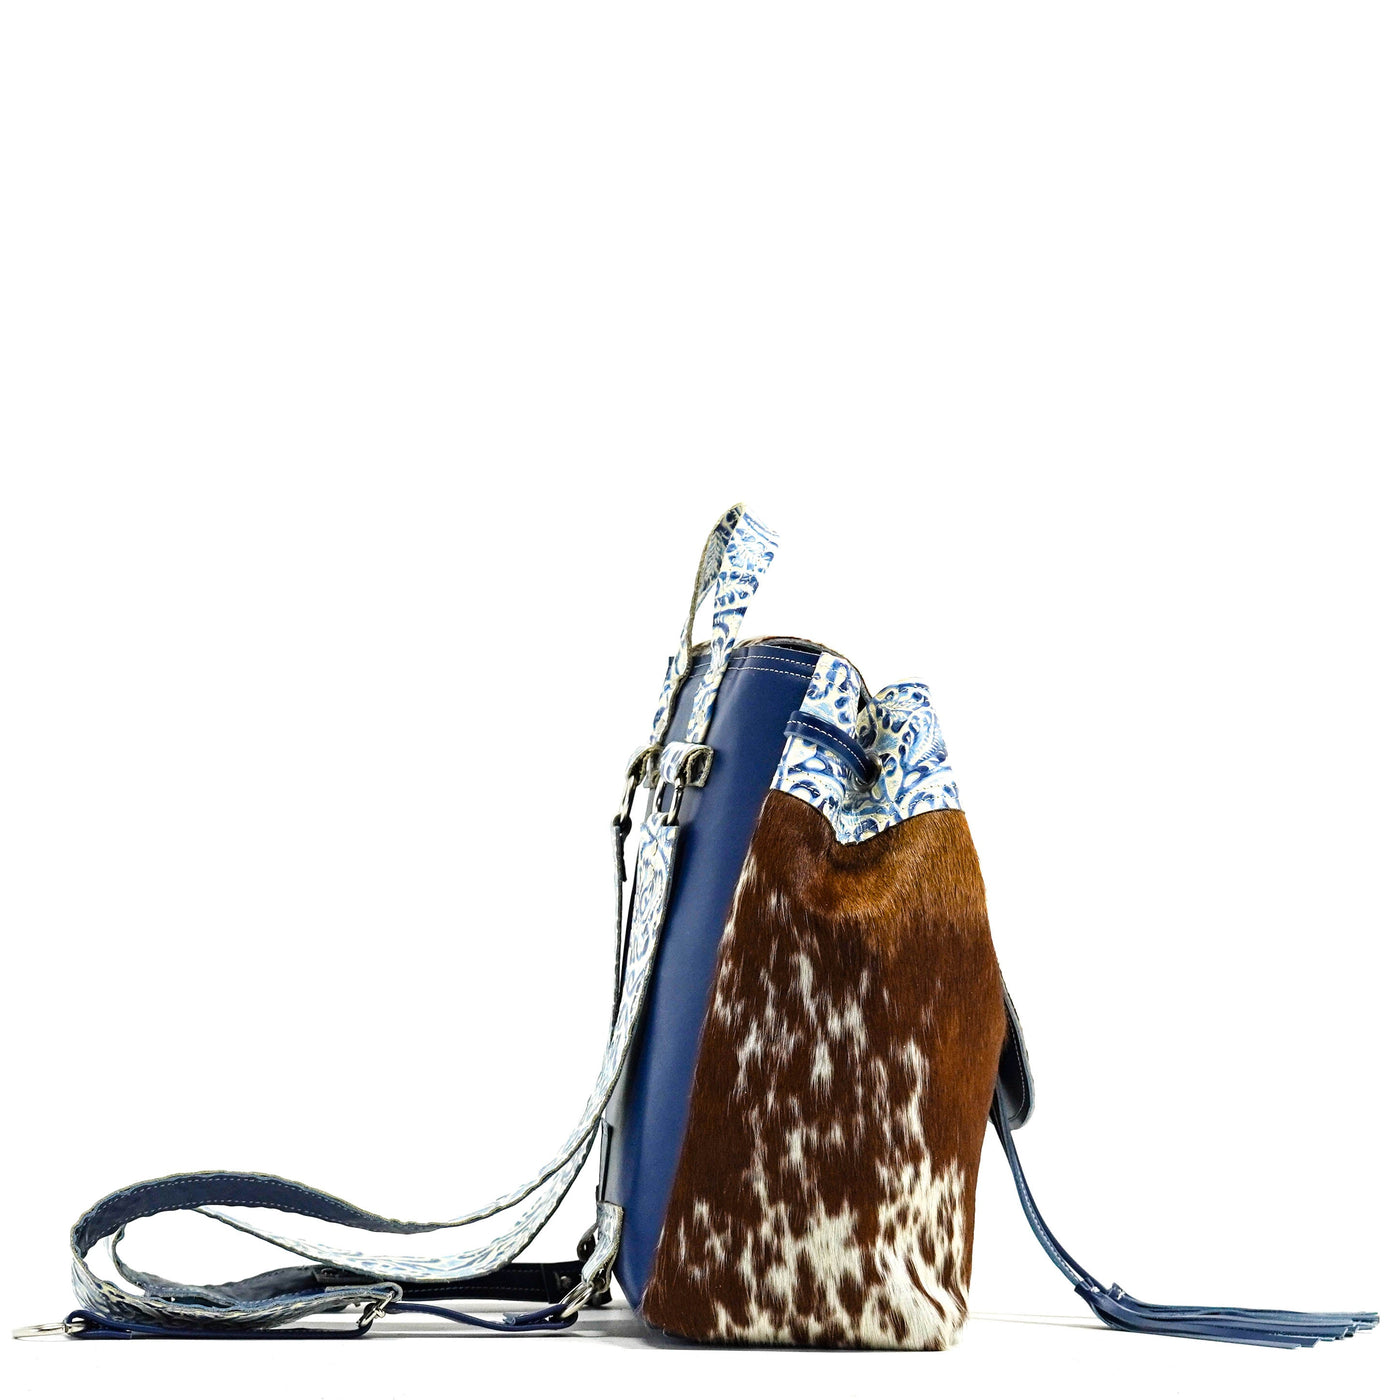 Kelsea Backpack - Longhorn w/ Galaxy Tool-Kelsea Backpack-Western-Cowhide-Bags-Handmade-Products-Gifts-Dancing Cactus Designs